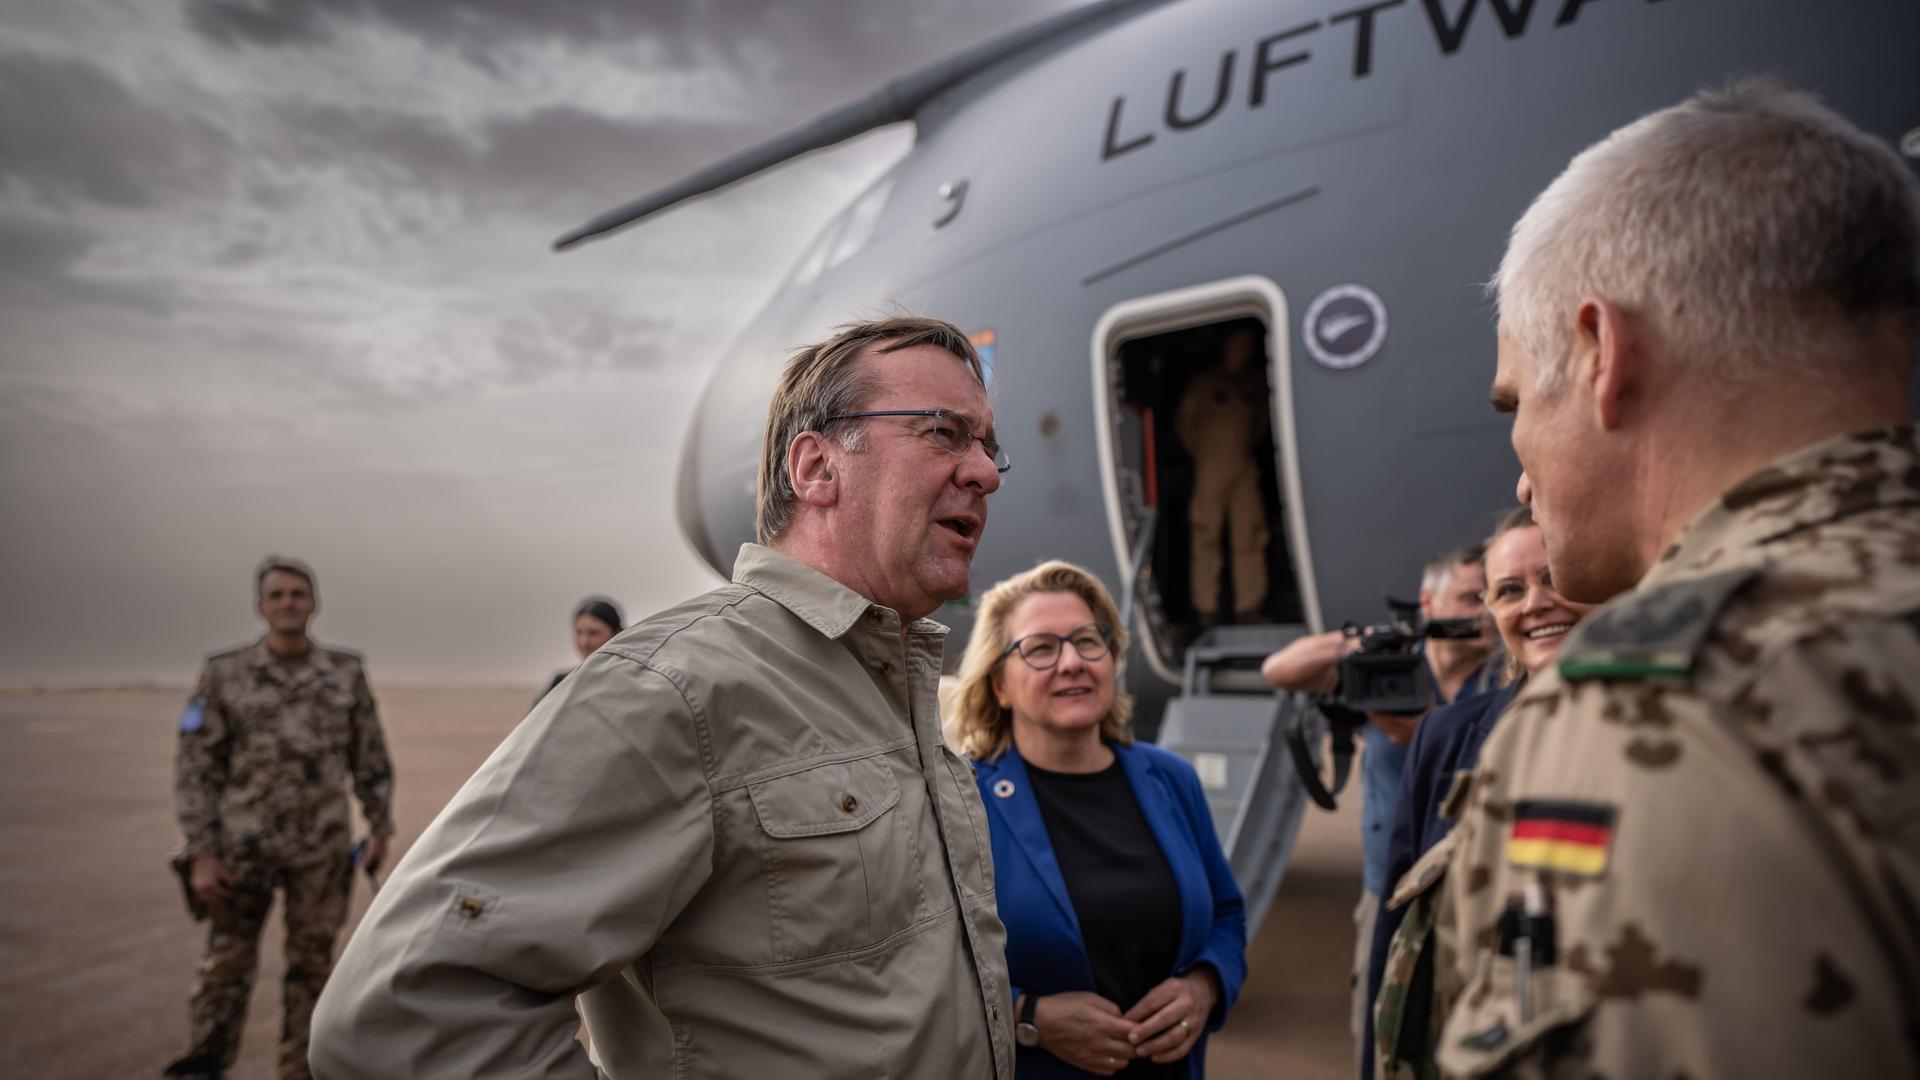 Mali, Gao: Boris Pistorius (SPD), Verteidigungsminister und Entwicklungsministerin Svenja Schulze (SPD), werden am Flughafen von Heiko Bohnsack, Kontingentführer, begrüßt.